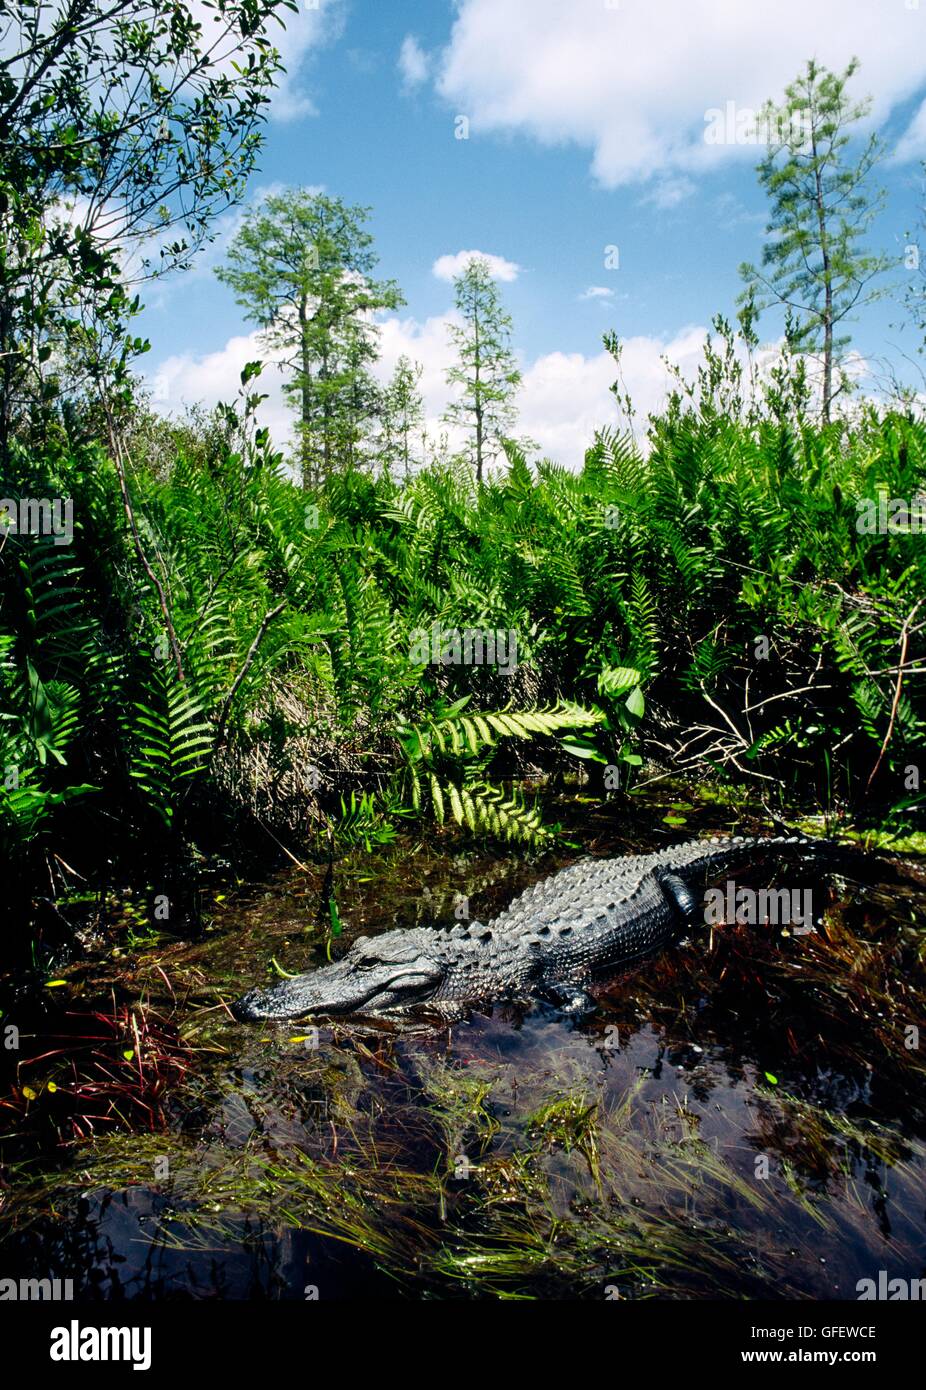 Amerikanisches Krokodil, Alligator Mississippiensis, nähert sich im schwarzen Wasser der Okefenokee National Wildlife Refuge, Georgia, USA Stockfoto